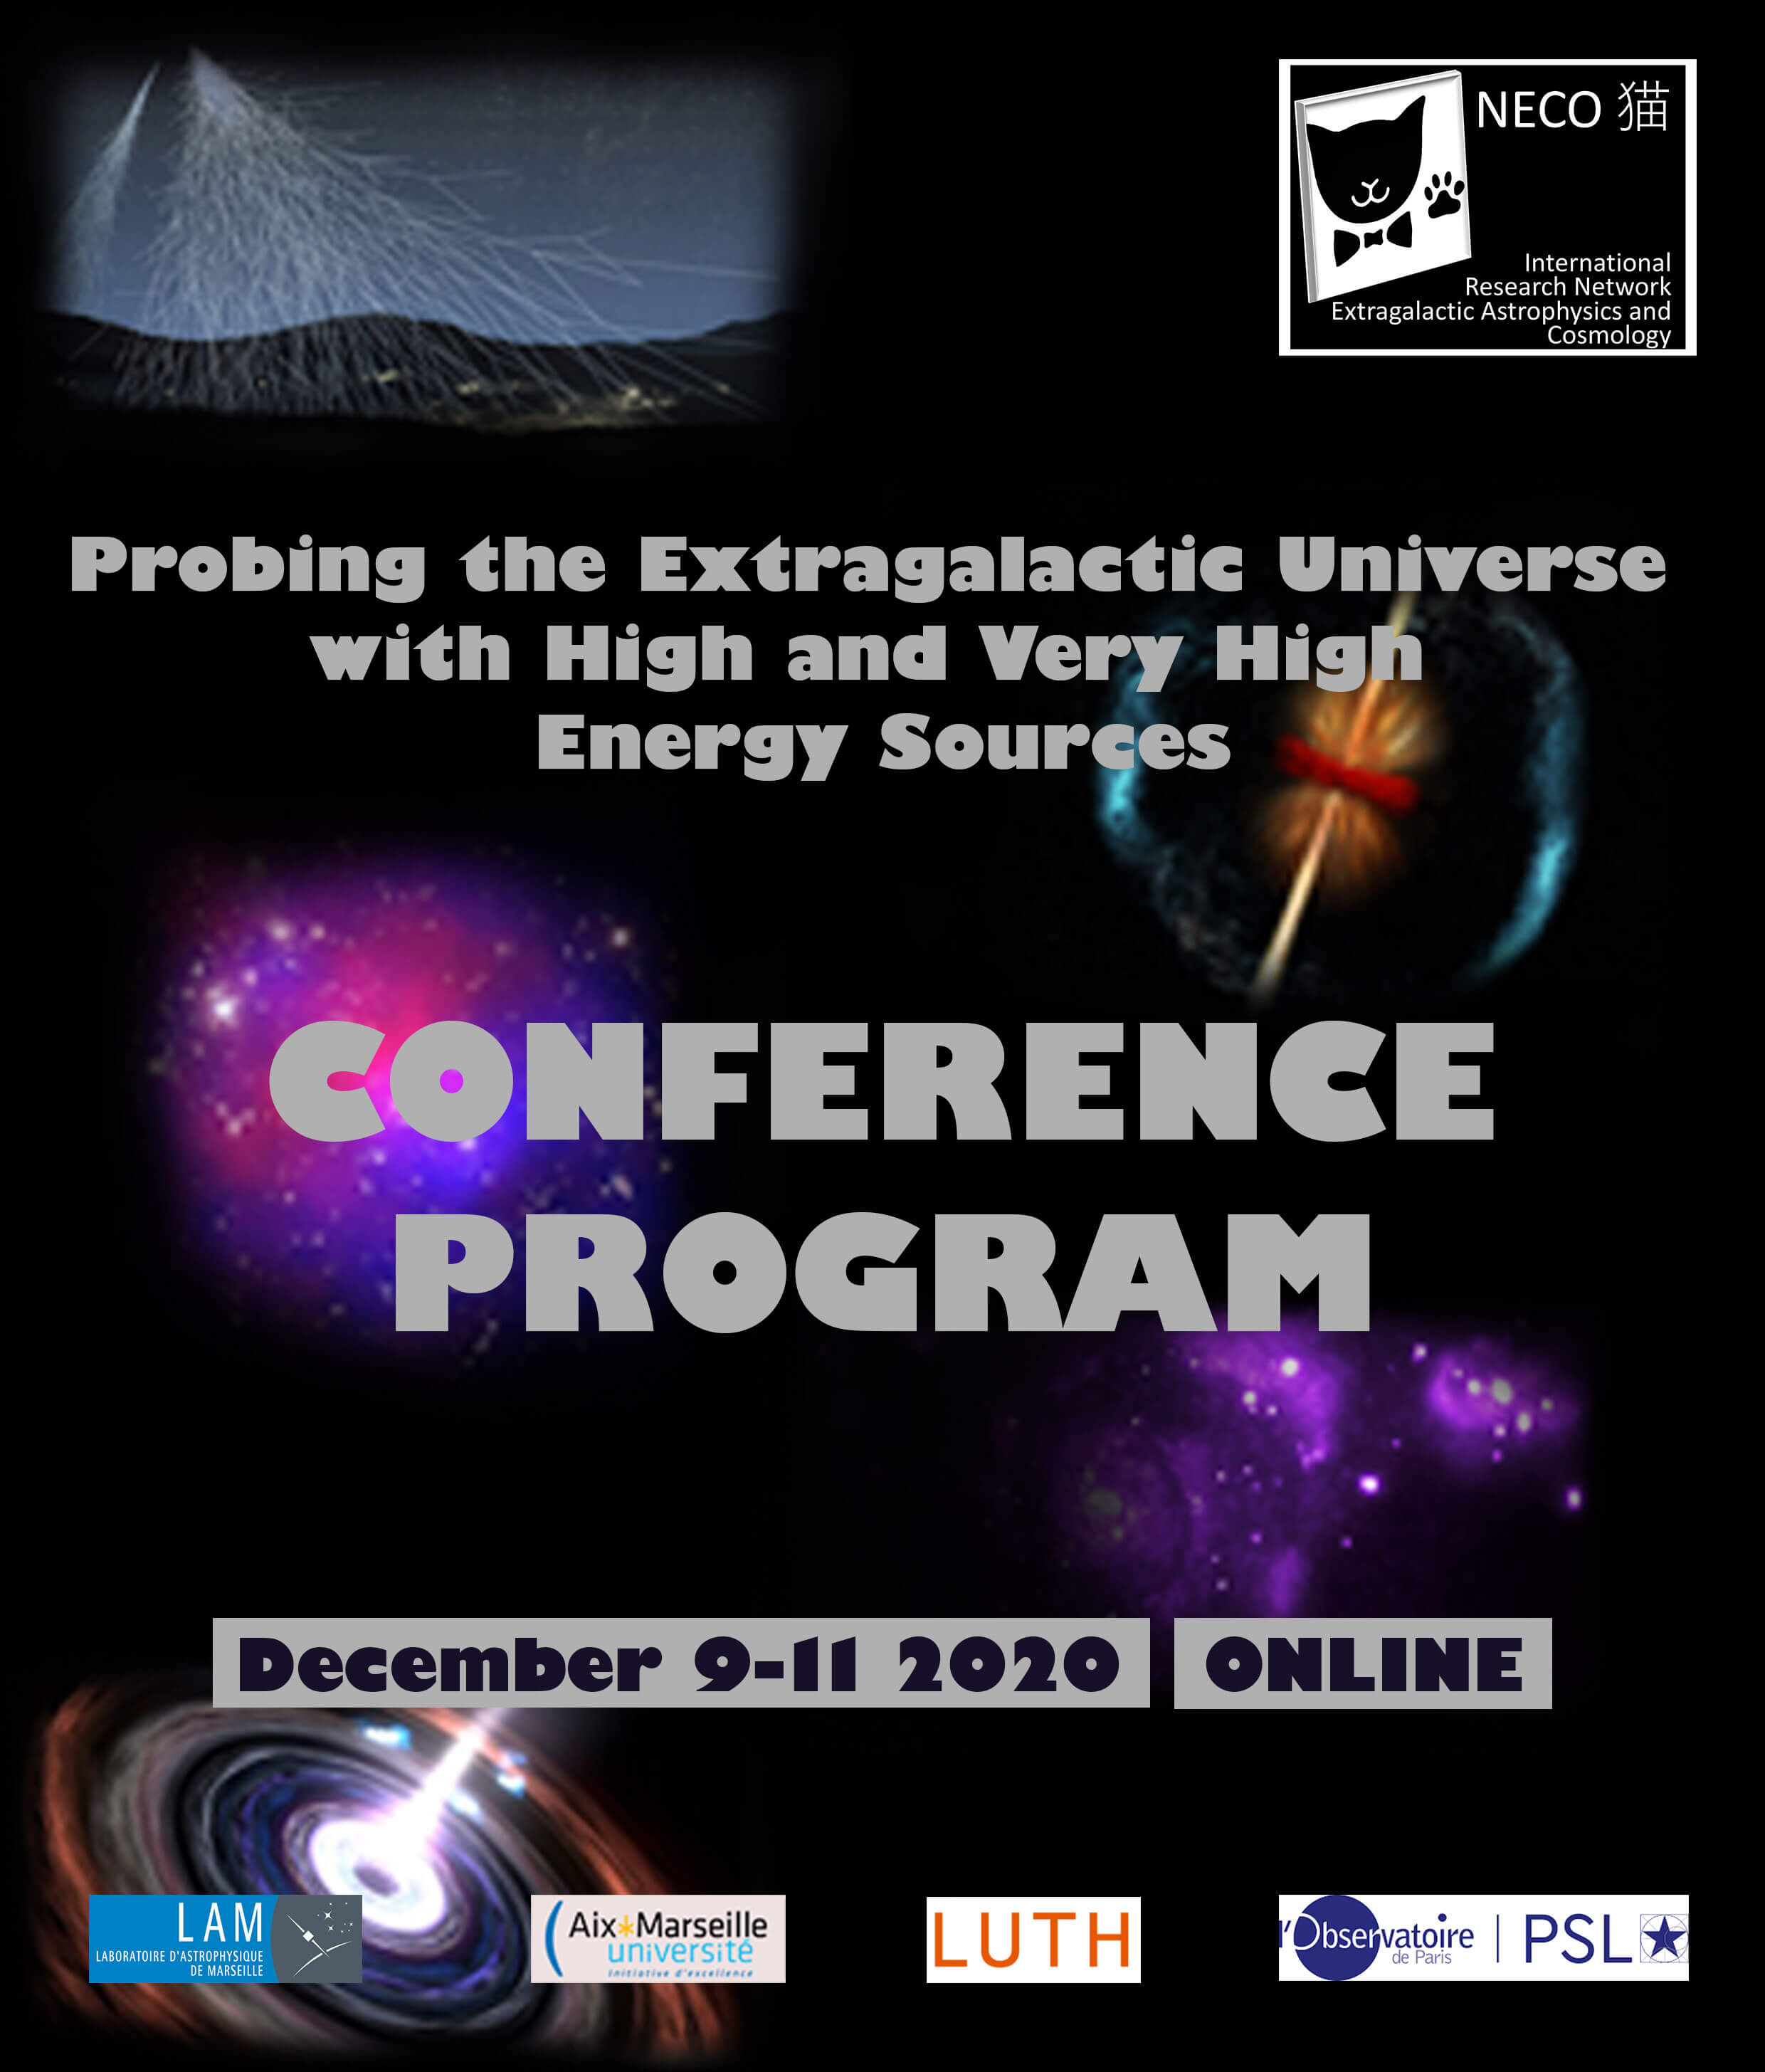 Online conference program